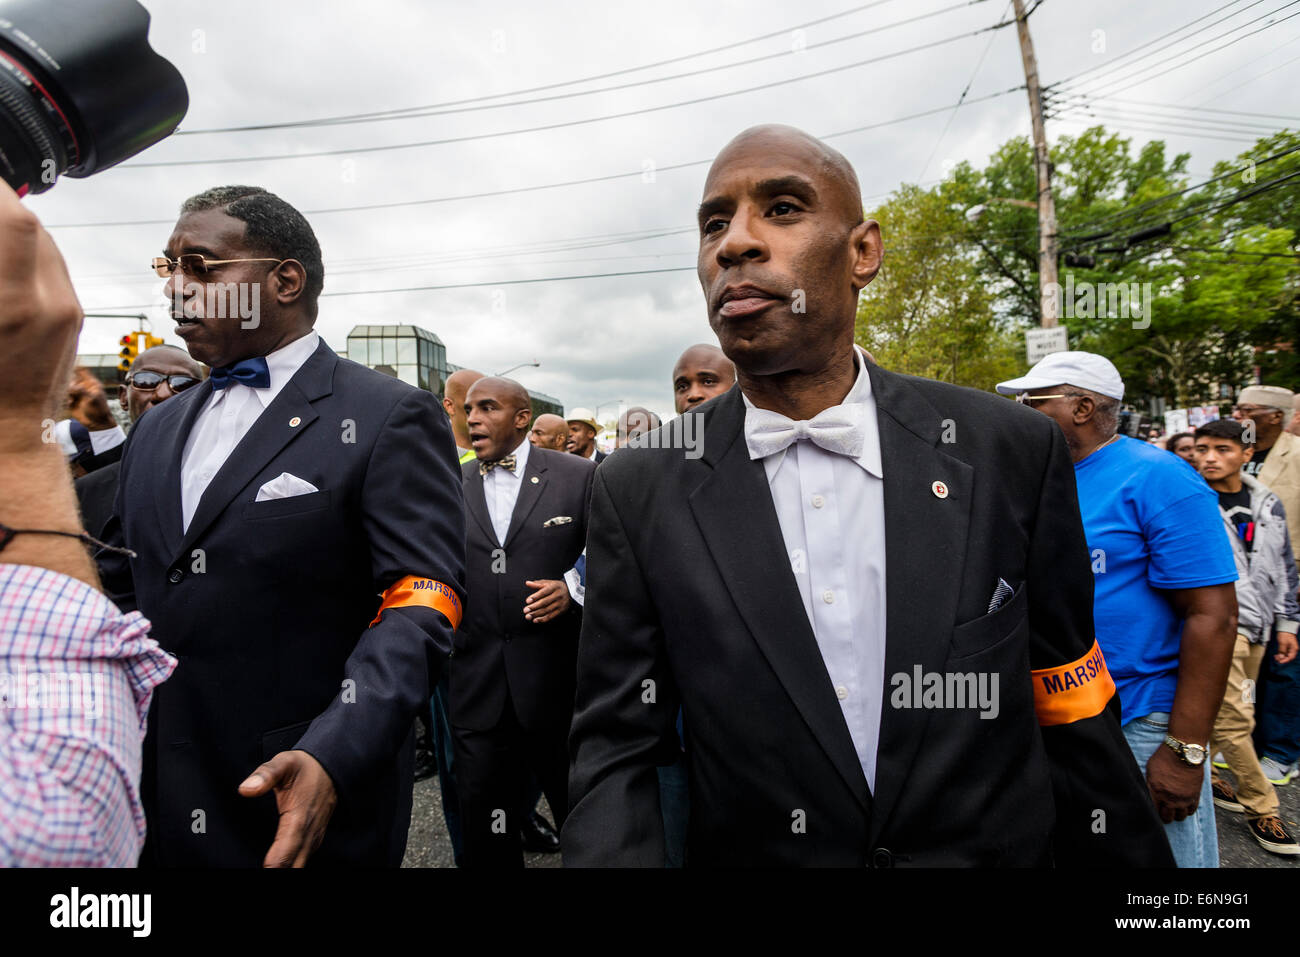 Staten Island NY - Membri della nazione dell'Islam come server esegue il marshalling come migliaia hanno marciato attraverso Stapleton, Staten IslandI di Foto Stock